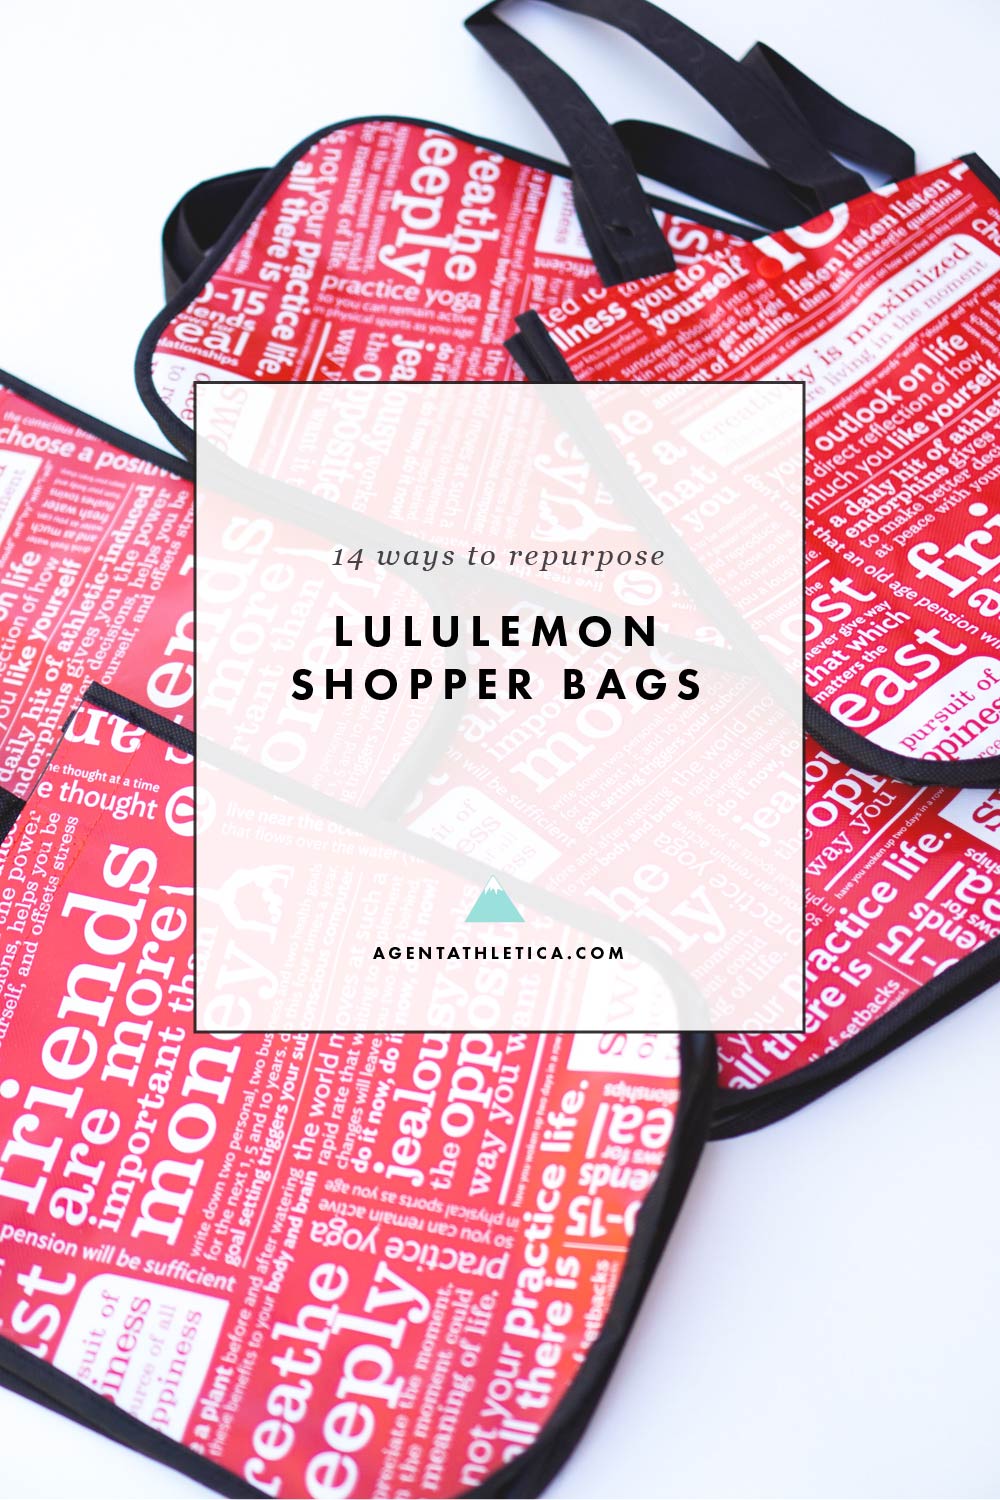 Do U Get A Lululemon Bag If U Order Online Jobs